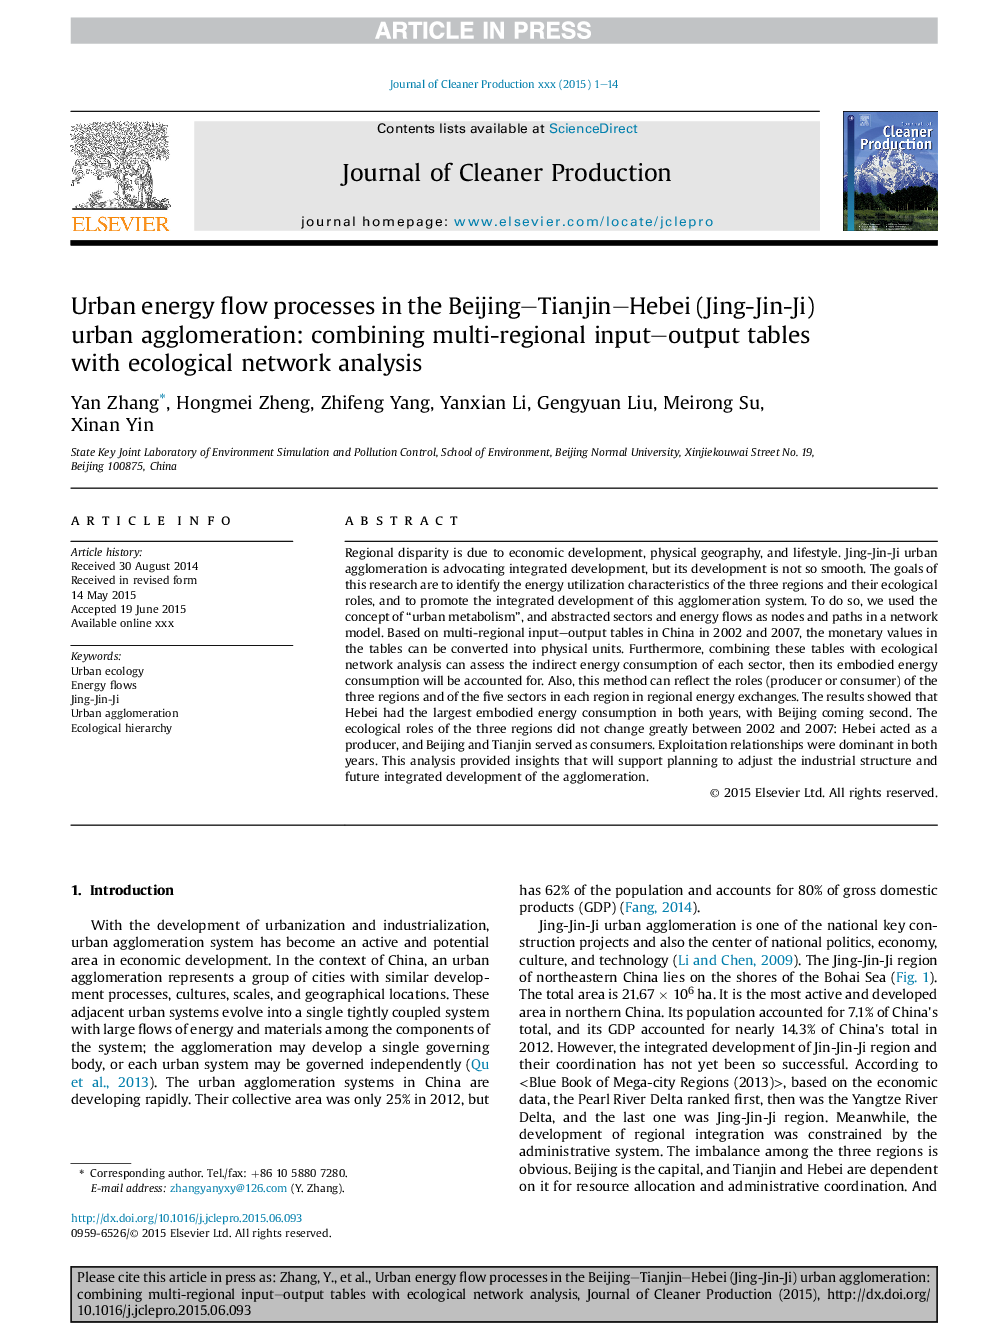 فرایندهای جریان انرژی شهری در تجمعات شهری پکن-تیانجین-هبی (جینگ جین جی): ترکیب جدول های ورودی-خروجی چند منطقه ای با تجزیه و تحلیل شبکه های اکولوژیکی 